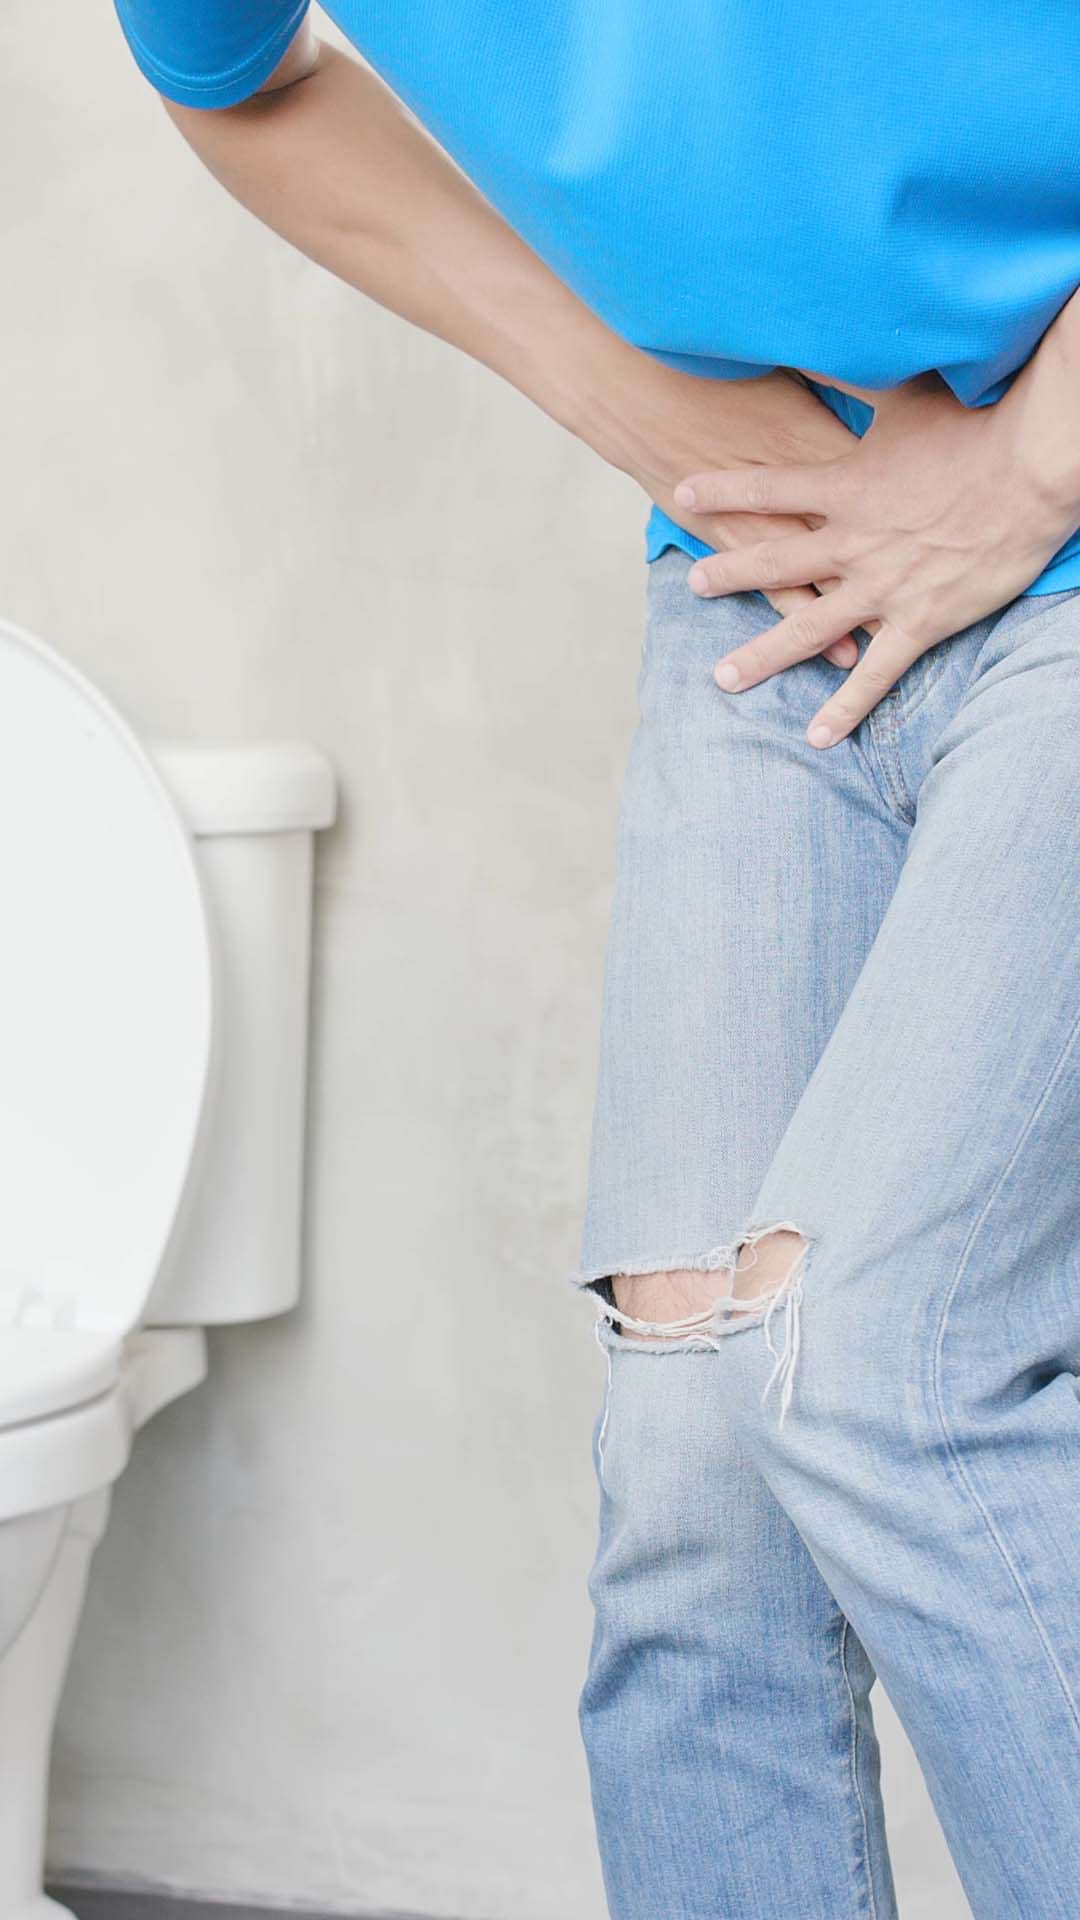 Cel mai bun antibiotic natural pentru infectii urinare | Blog despre prostatită